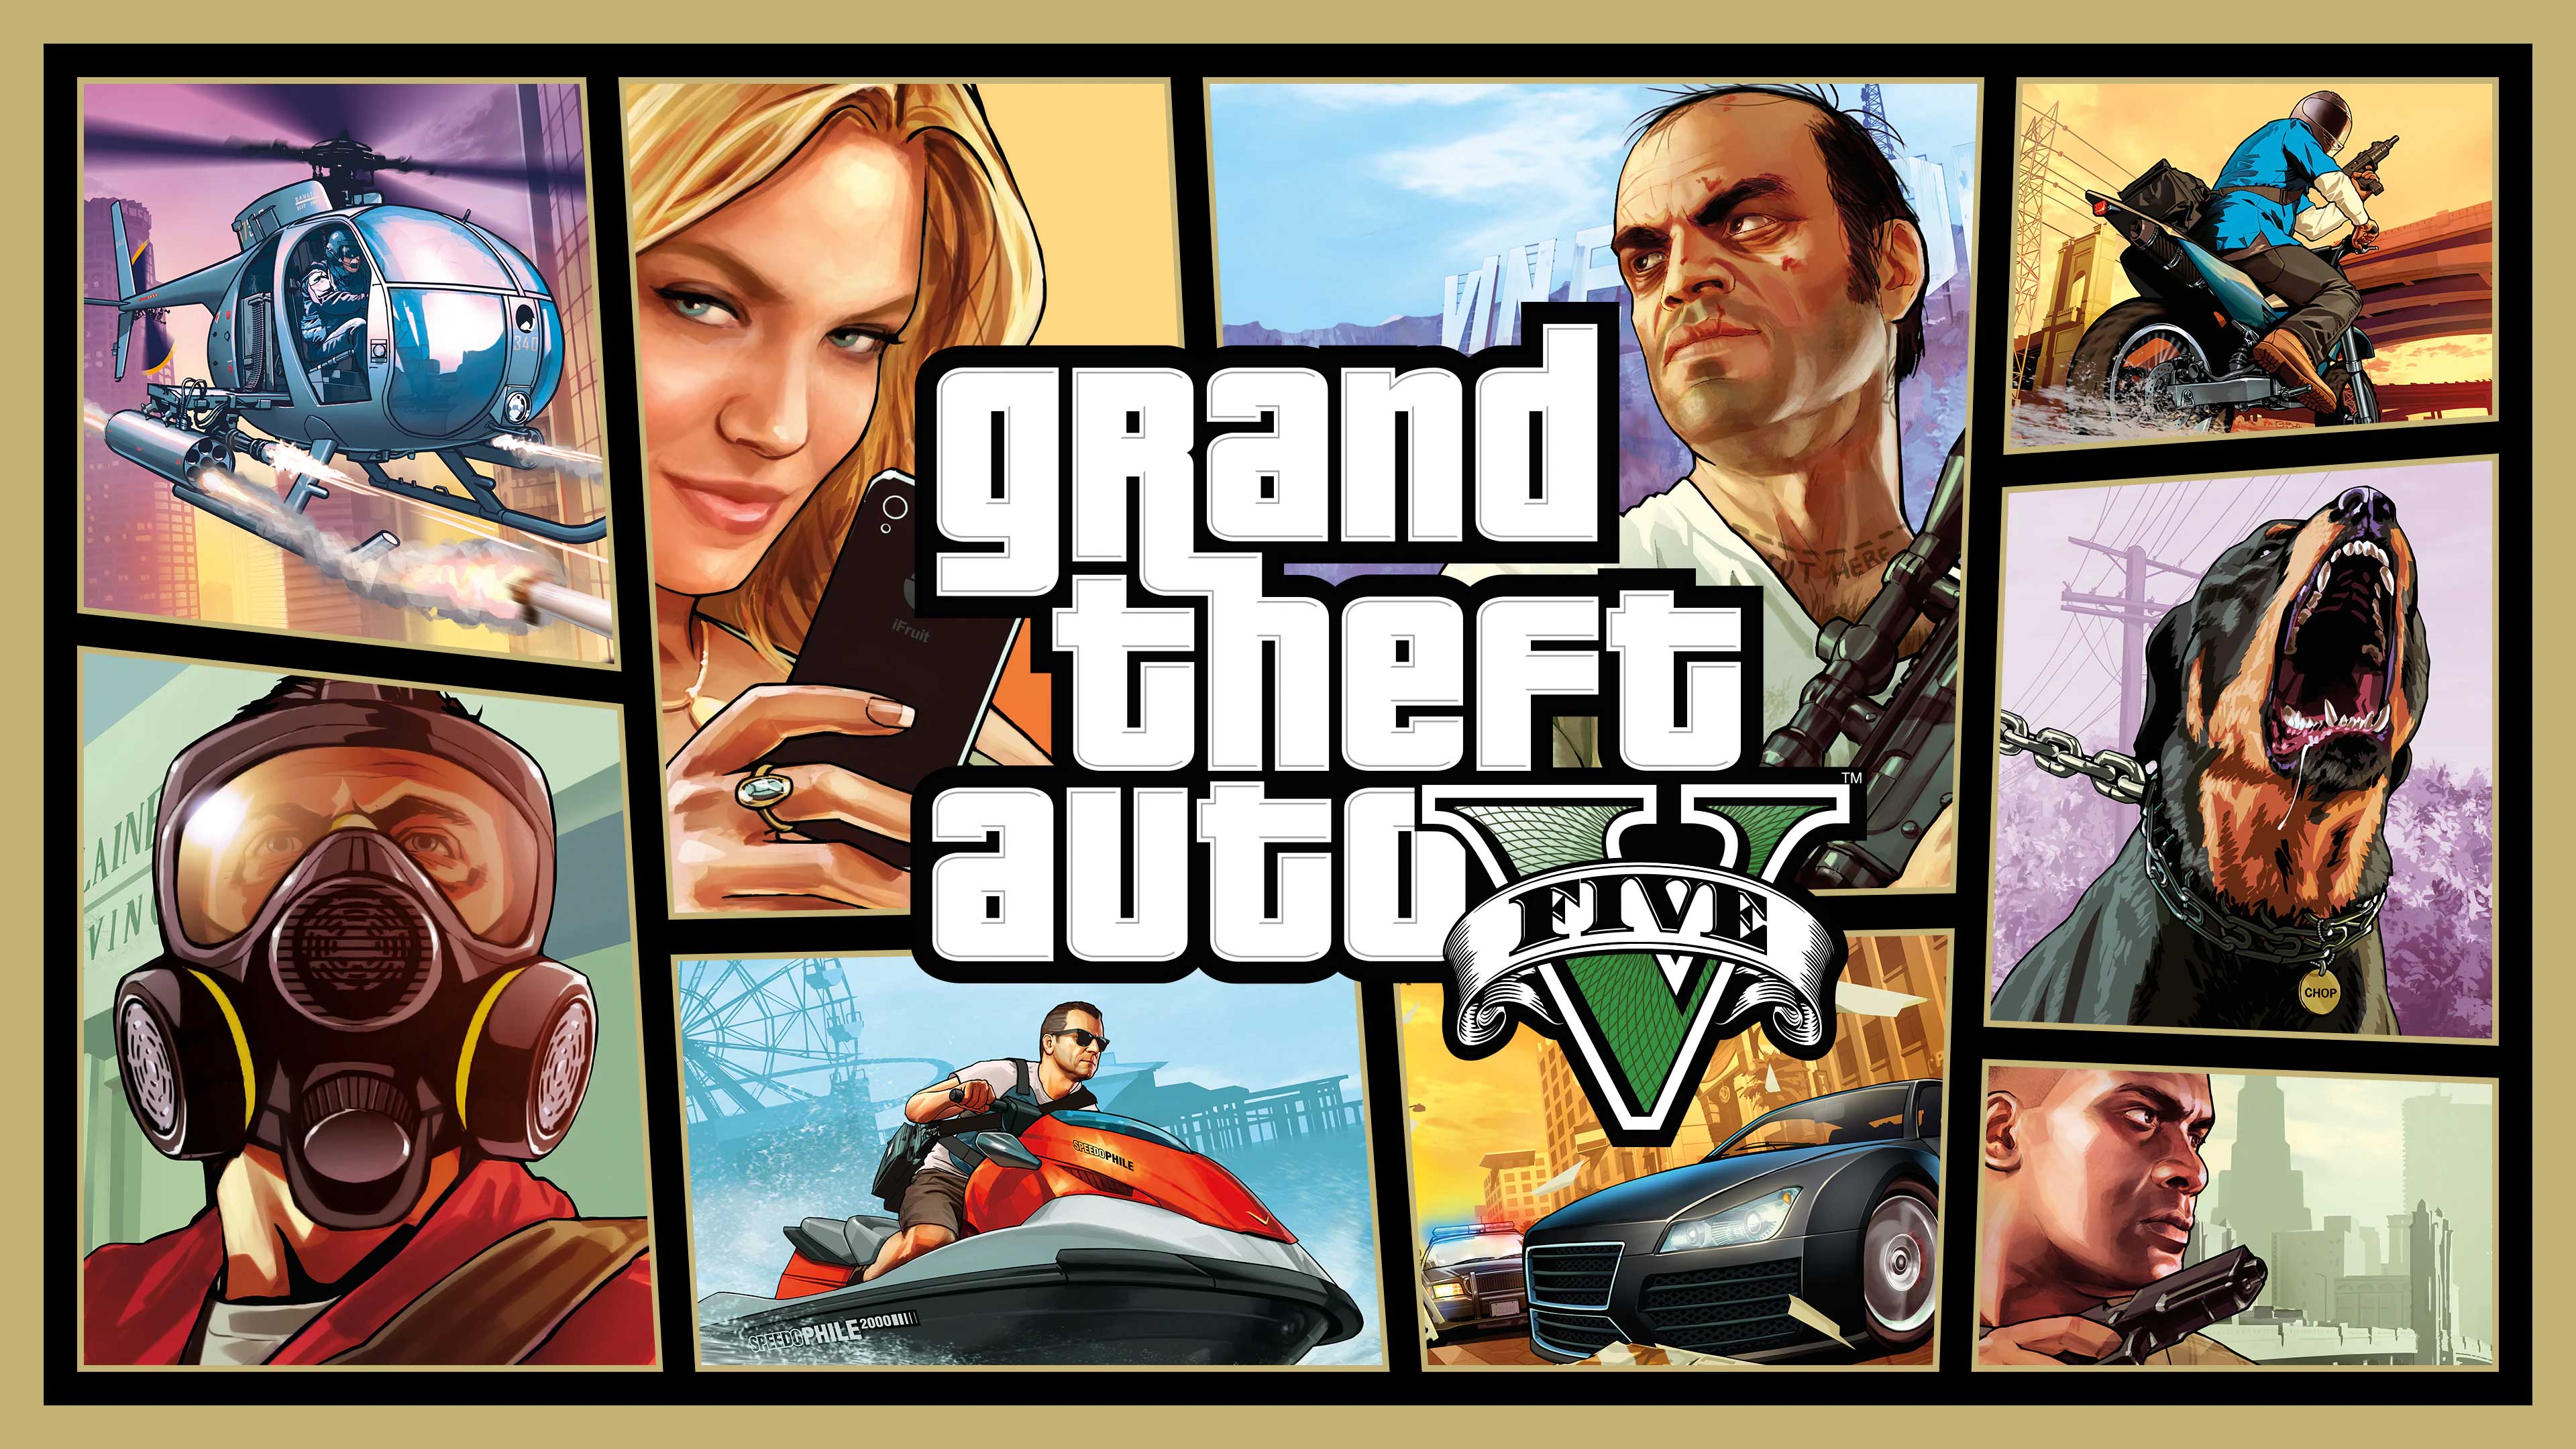 Grand Theft Auto V, The Key Gamer, thekeygamer.com